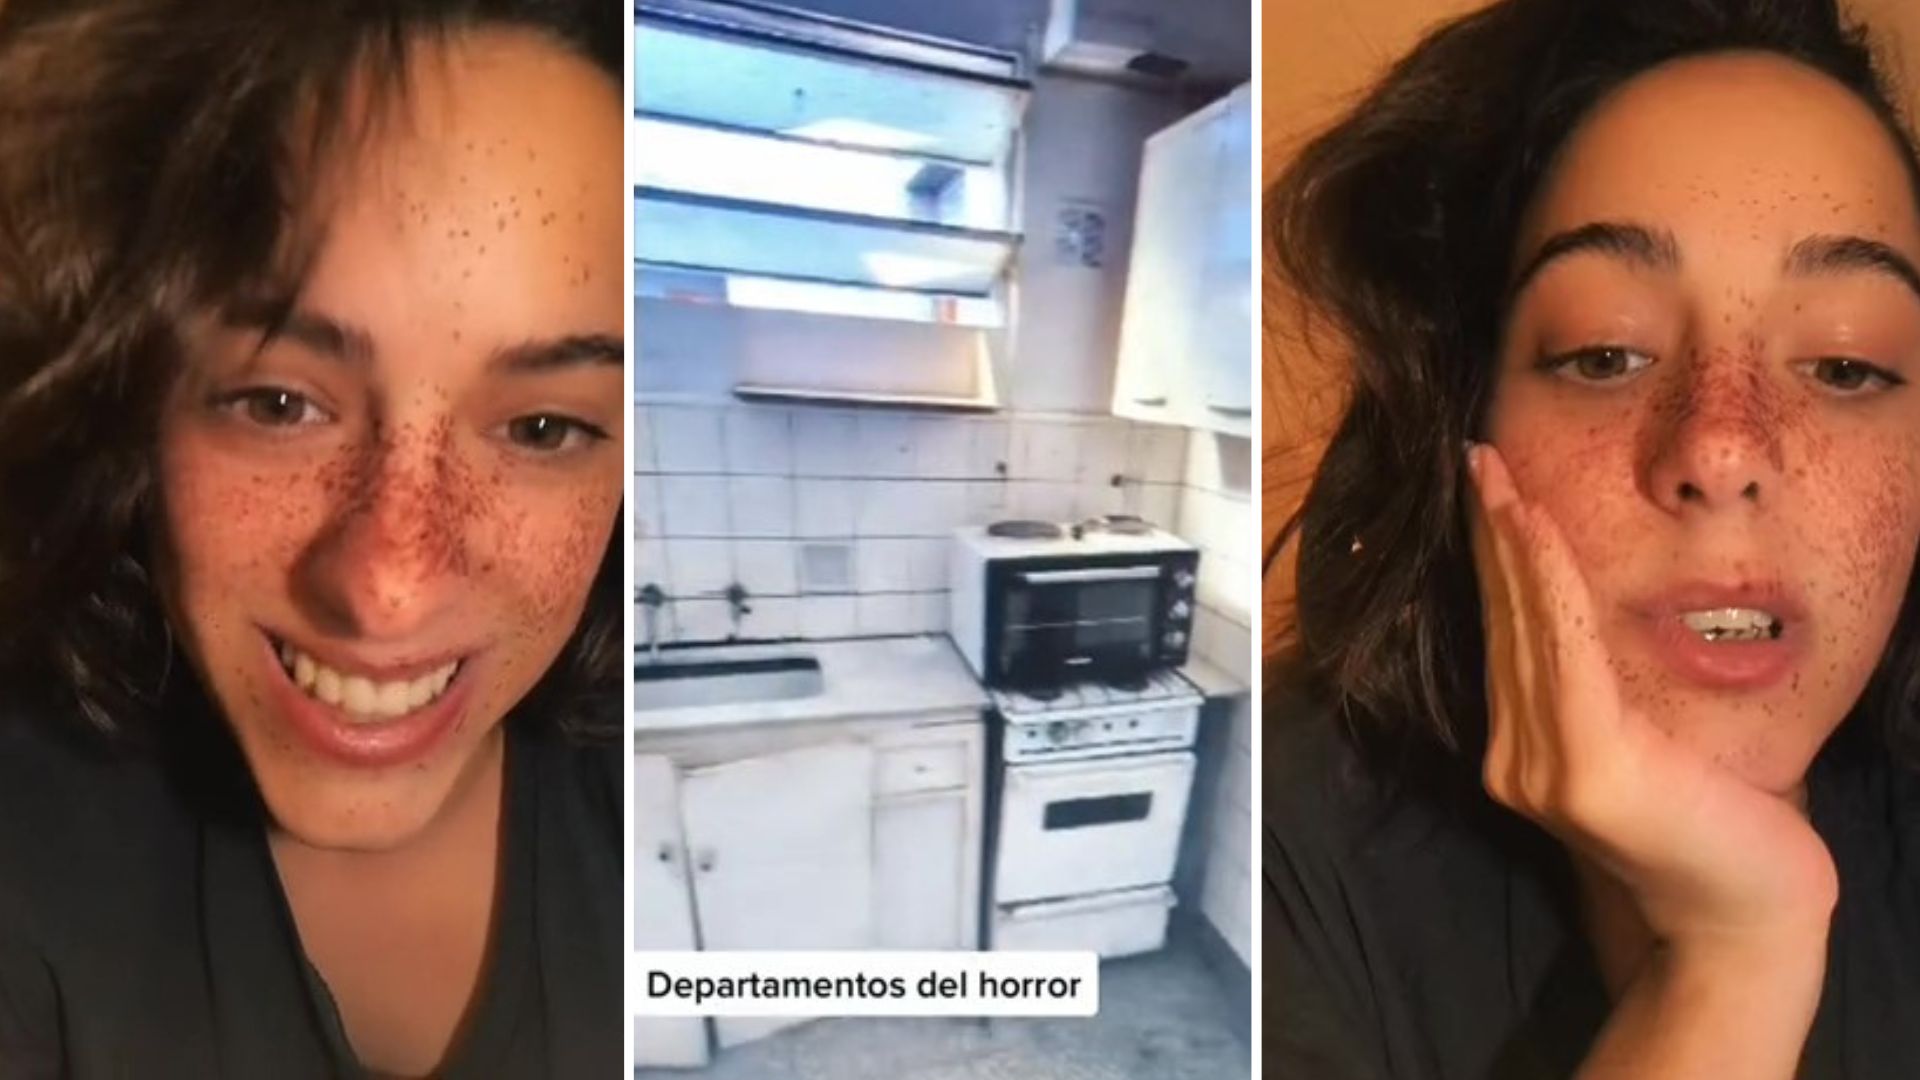 “Departamentos del horror”: la odisea de una joven estudiante de medicina que busca alquilar en la ciudad de Buenos Aires